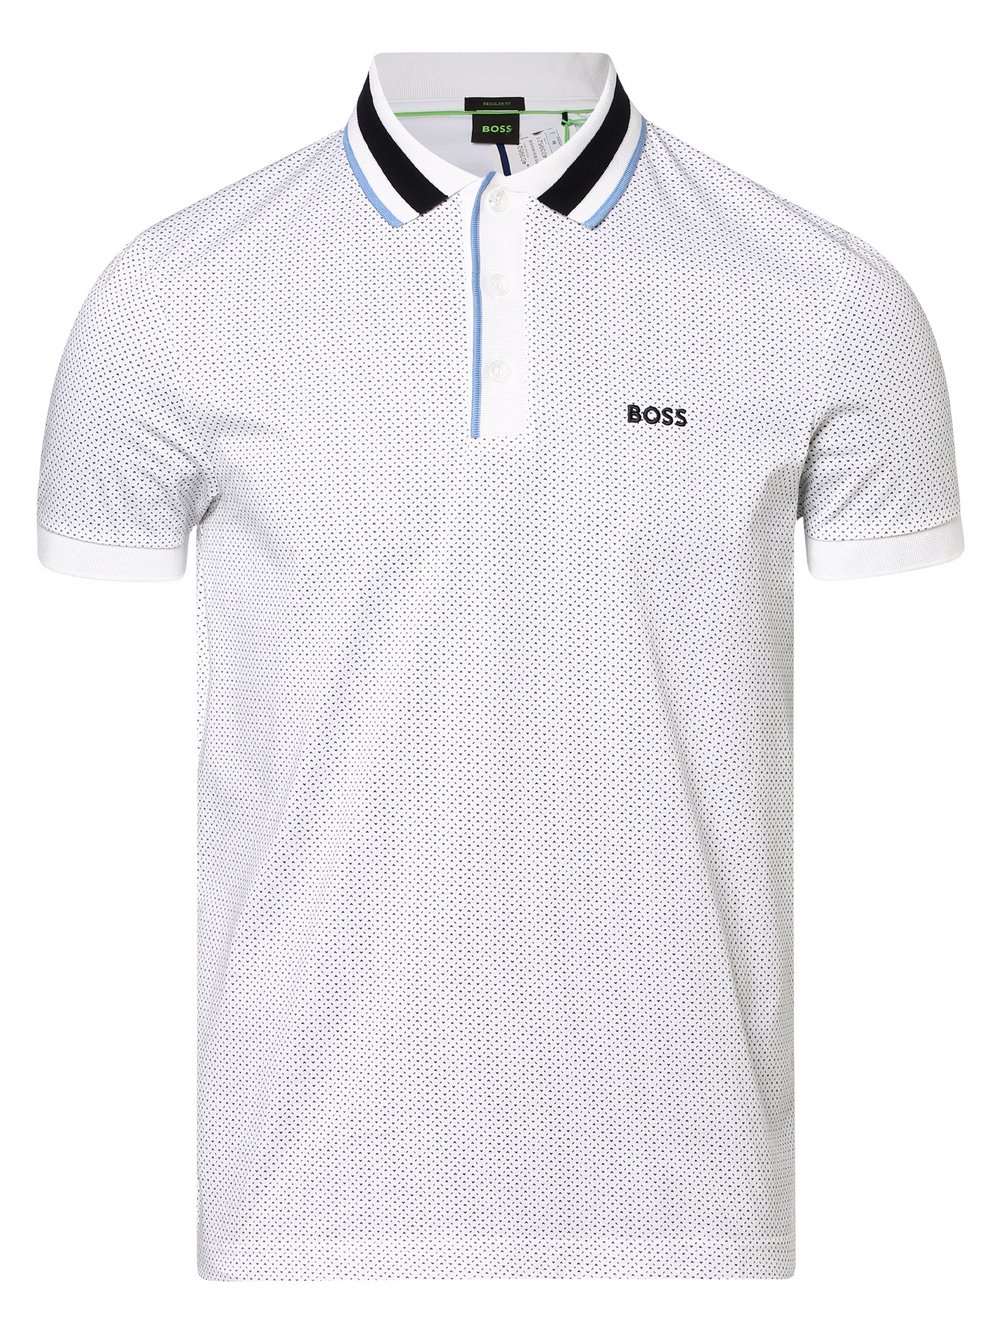 BOSS Green - Męska koszulka polo – Paddy 2, biały|niebieski